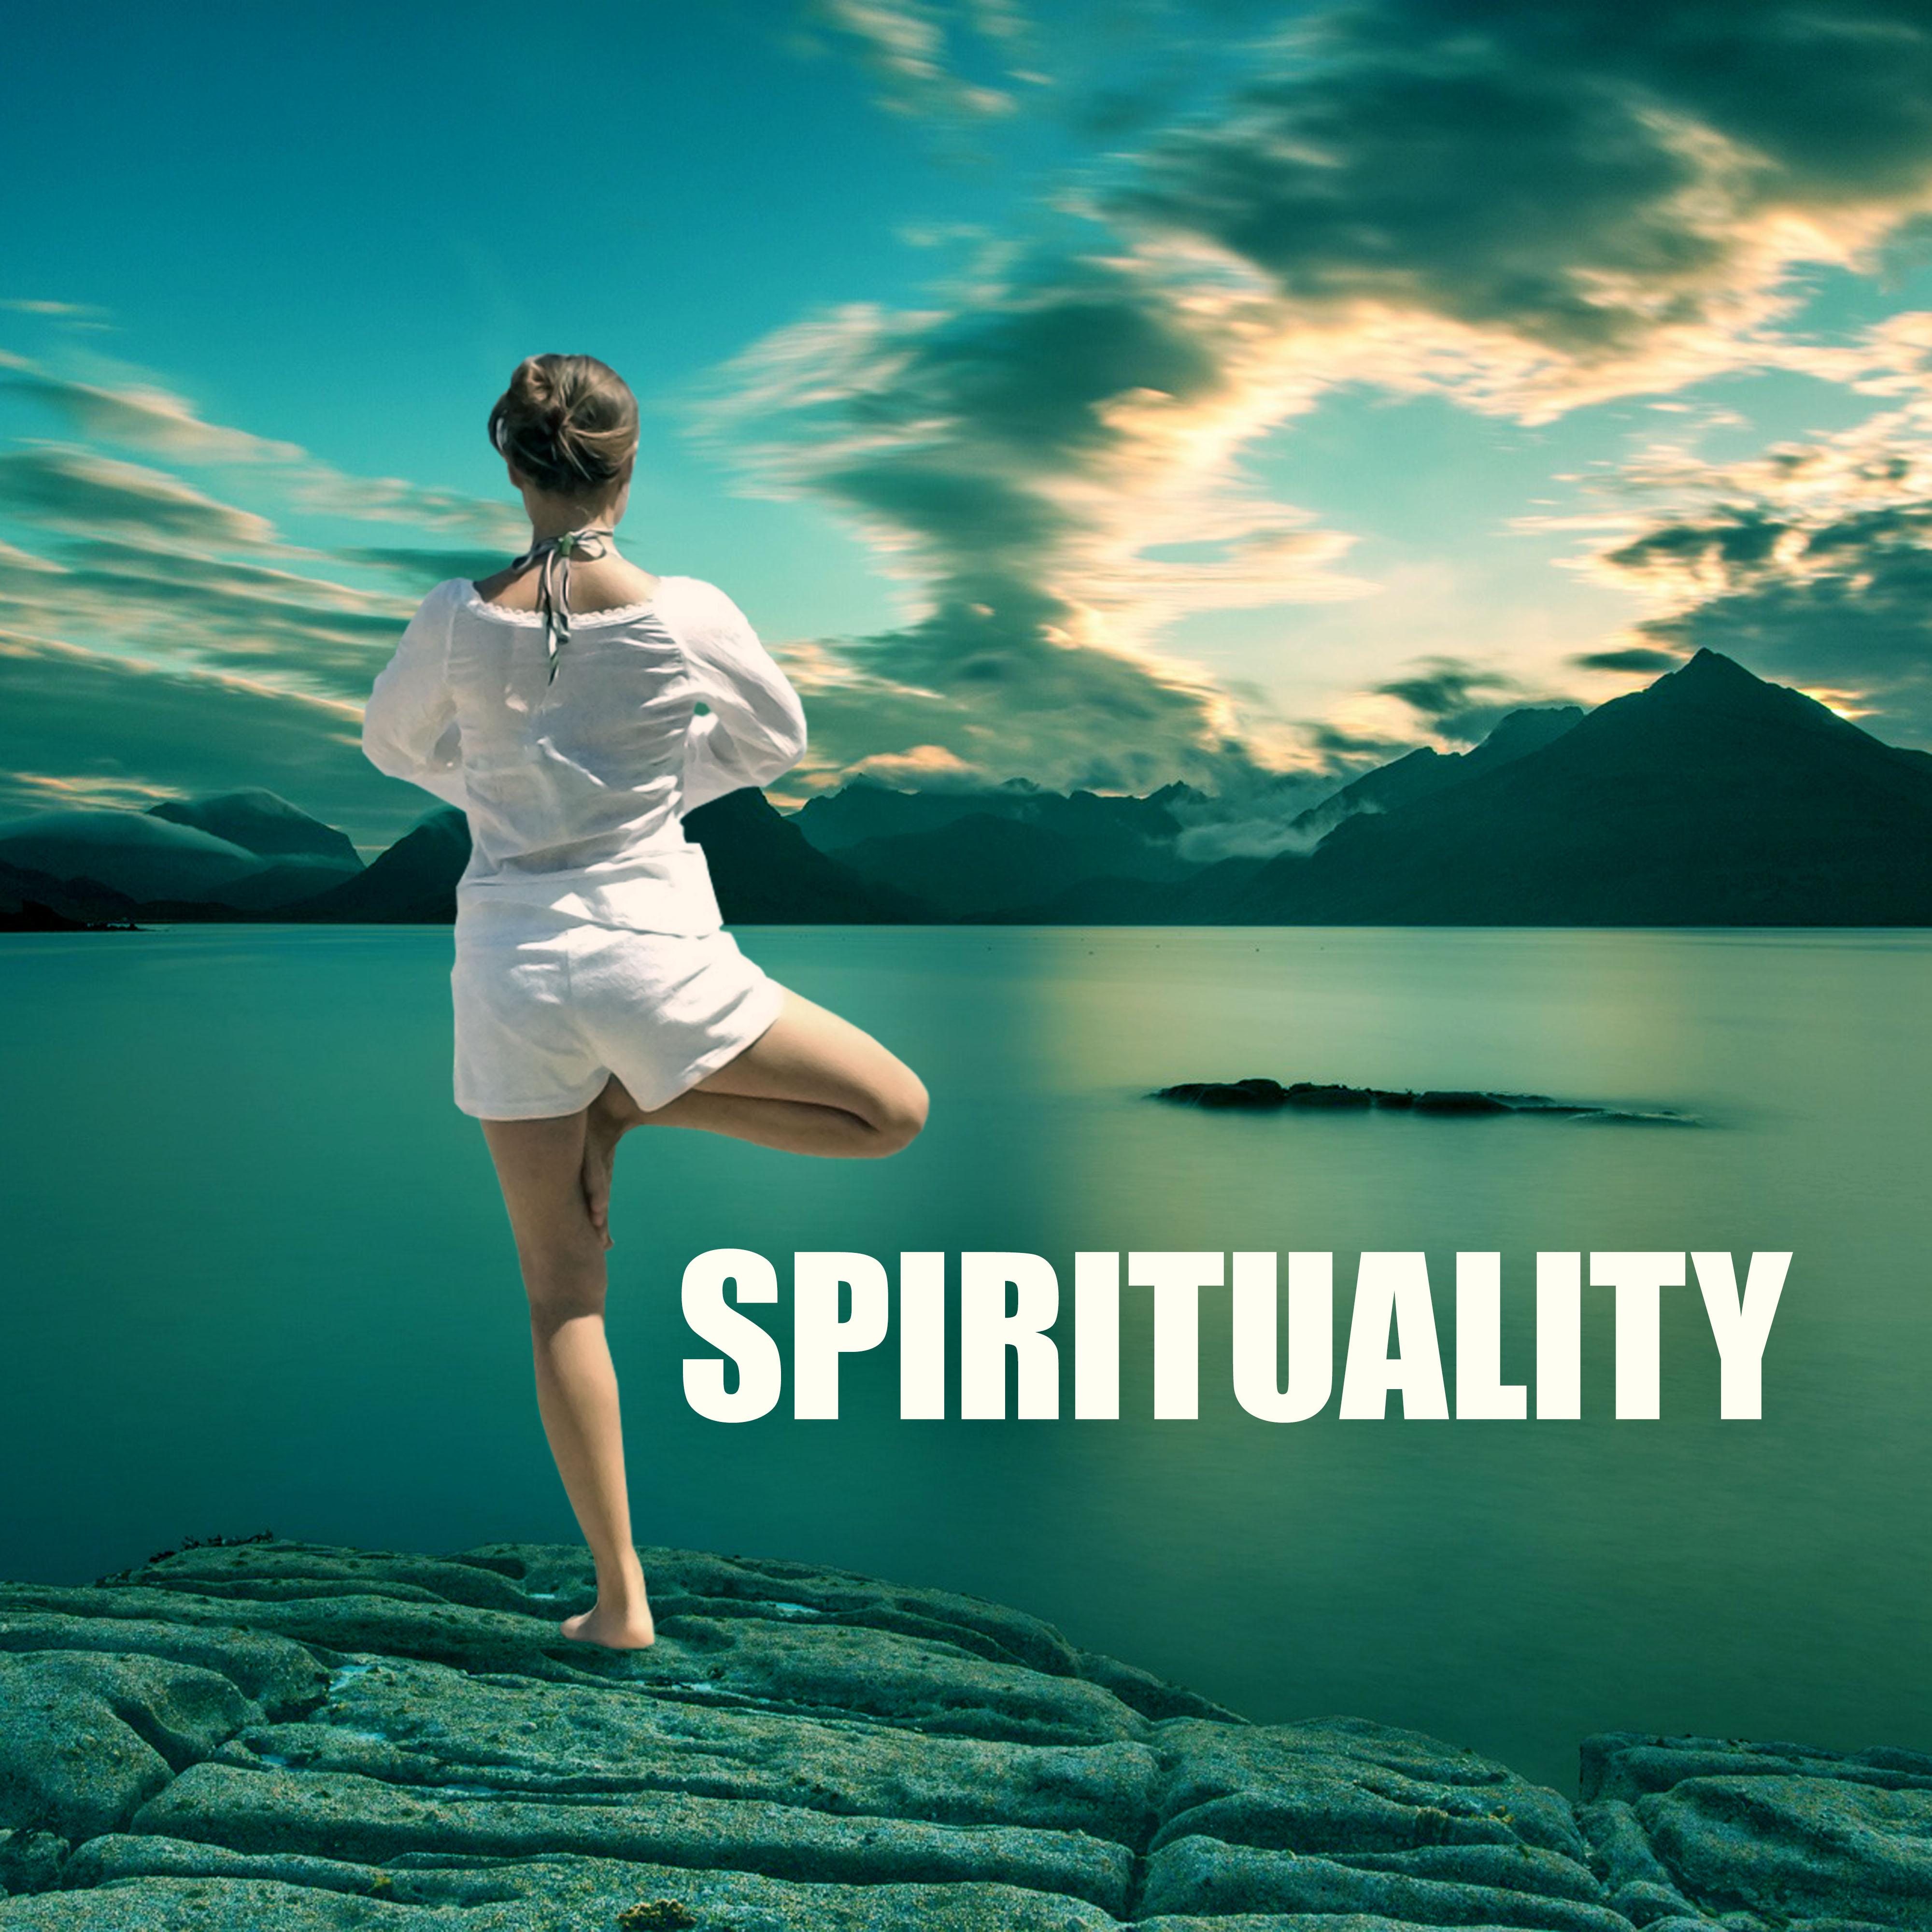 Spirituality - Hatha Yoga, Spiritual Healing, Chakra Balancing, Sounds for Yoga Practice, Temple of Meditation